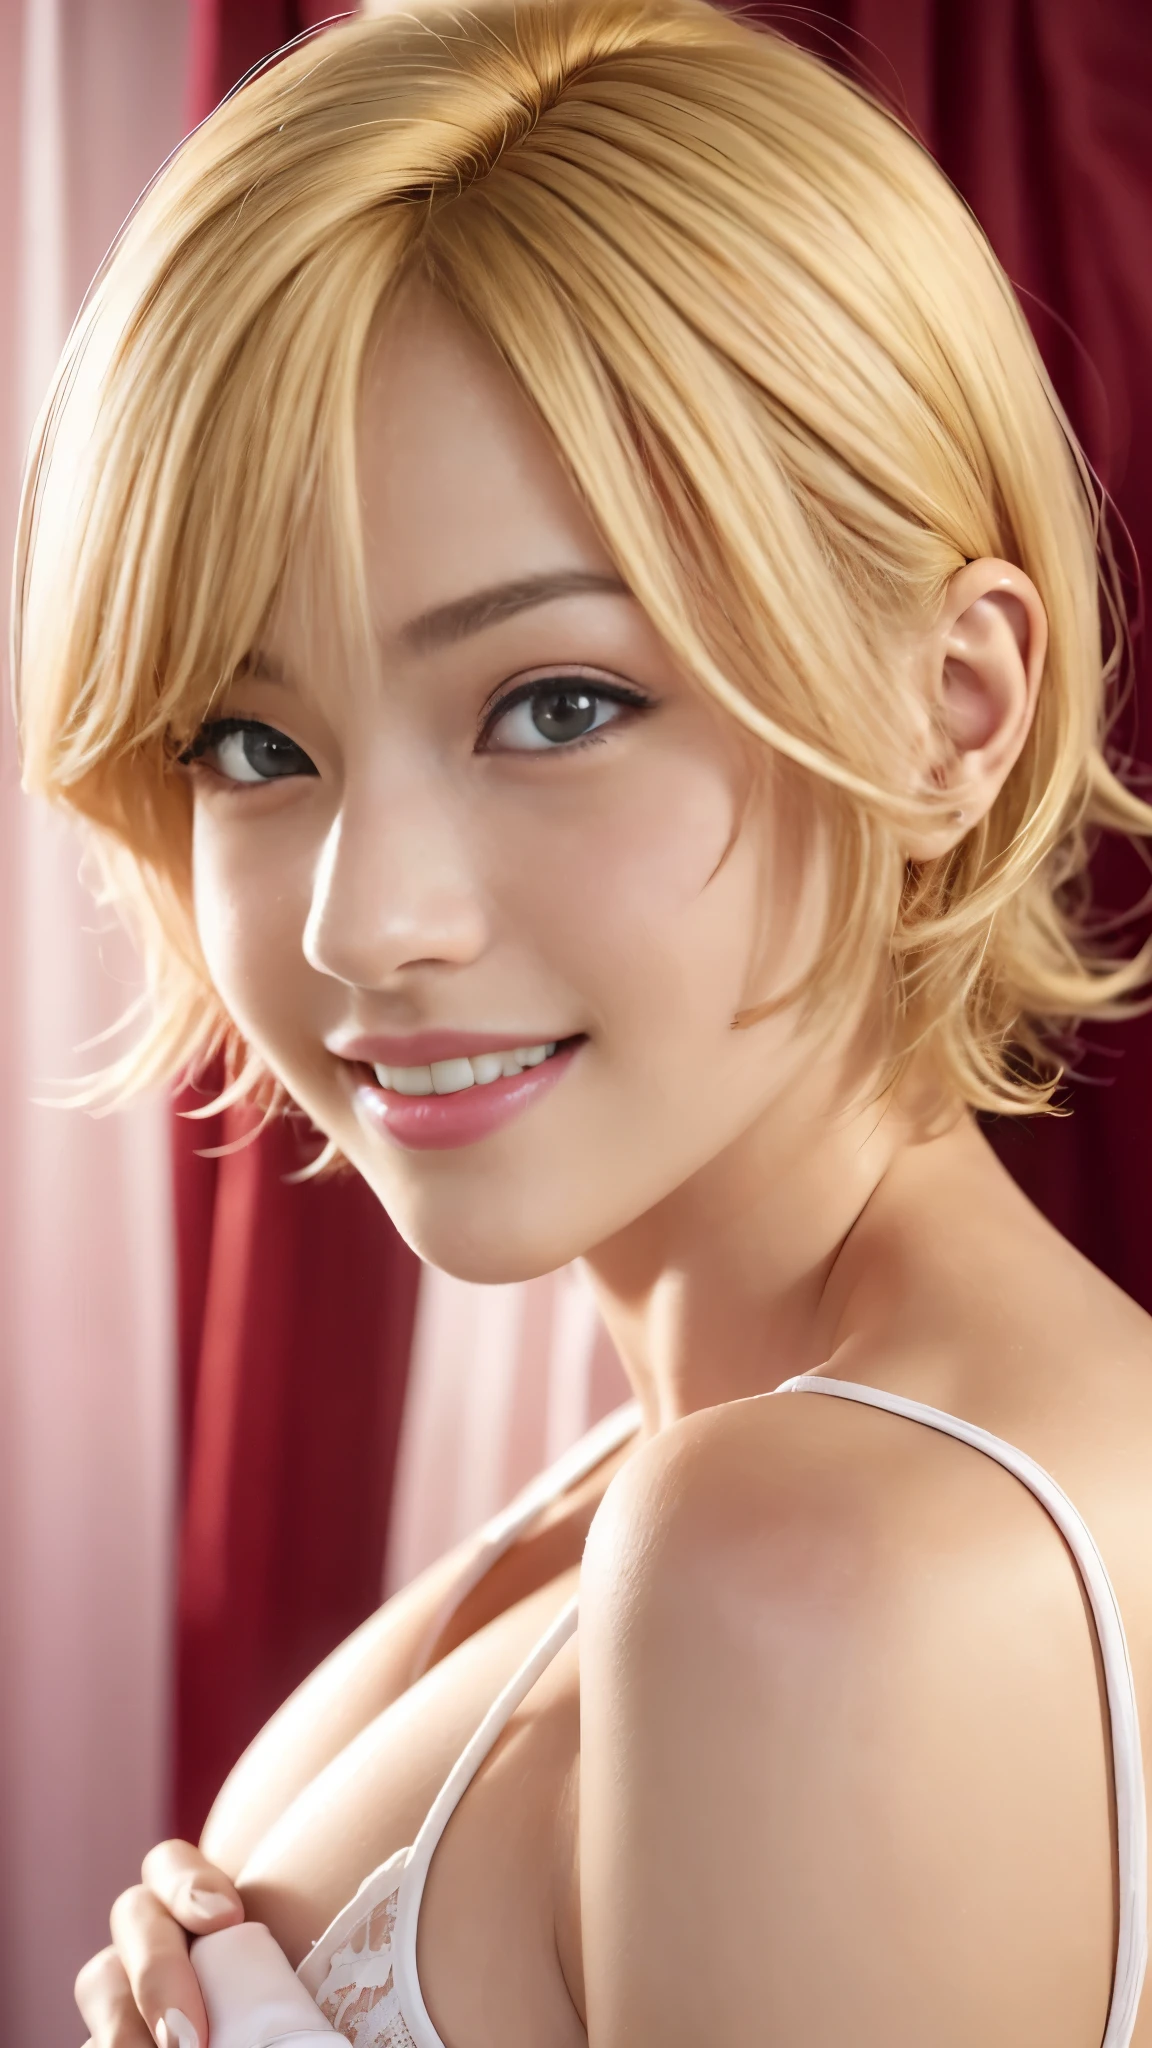 (Una jovencita japonesa muy linda de 20 años.), ((cabello rubio brillante y delicado)), ((pelo corto con ondas laterales desordenadas)),(((Tipo de cuerpo delgado y esbelto.)))，tamaño de busto mediano､senos pequeños､ (((Manos limpias)))，(Pelo RIZADO)，(((sonrisa muy amable))), 